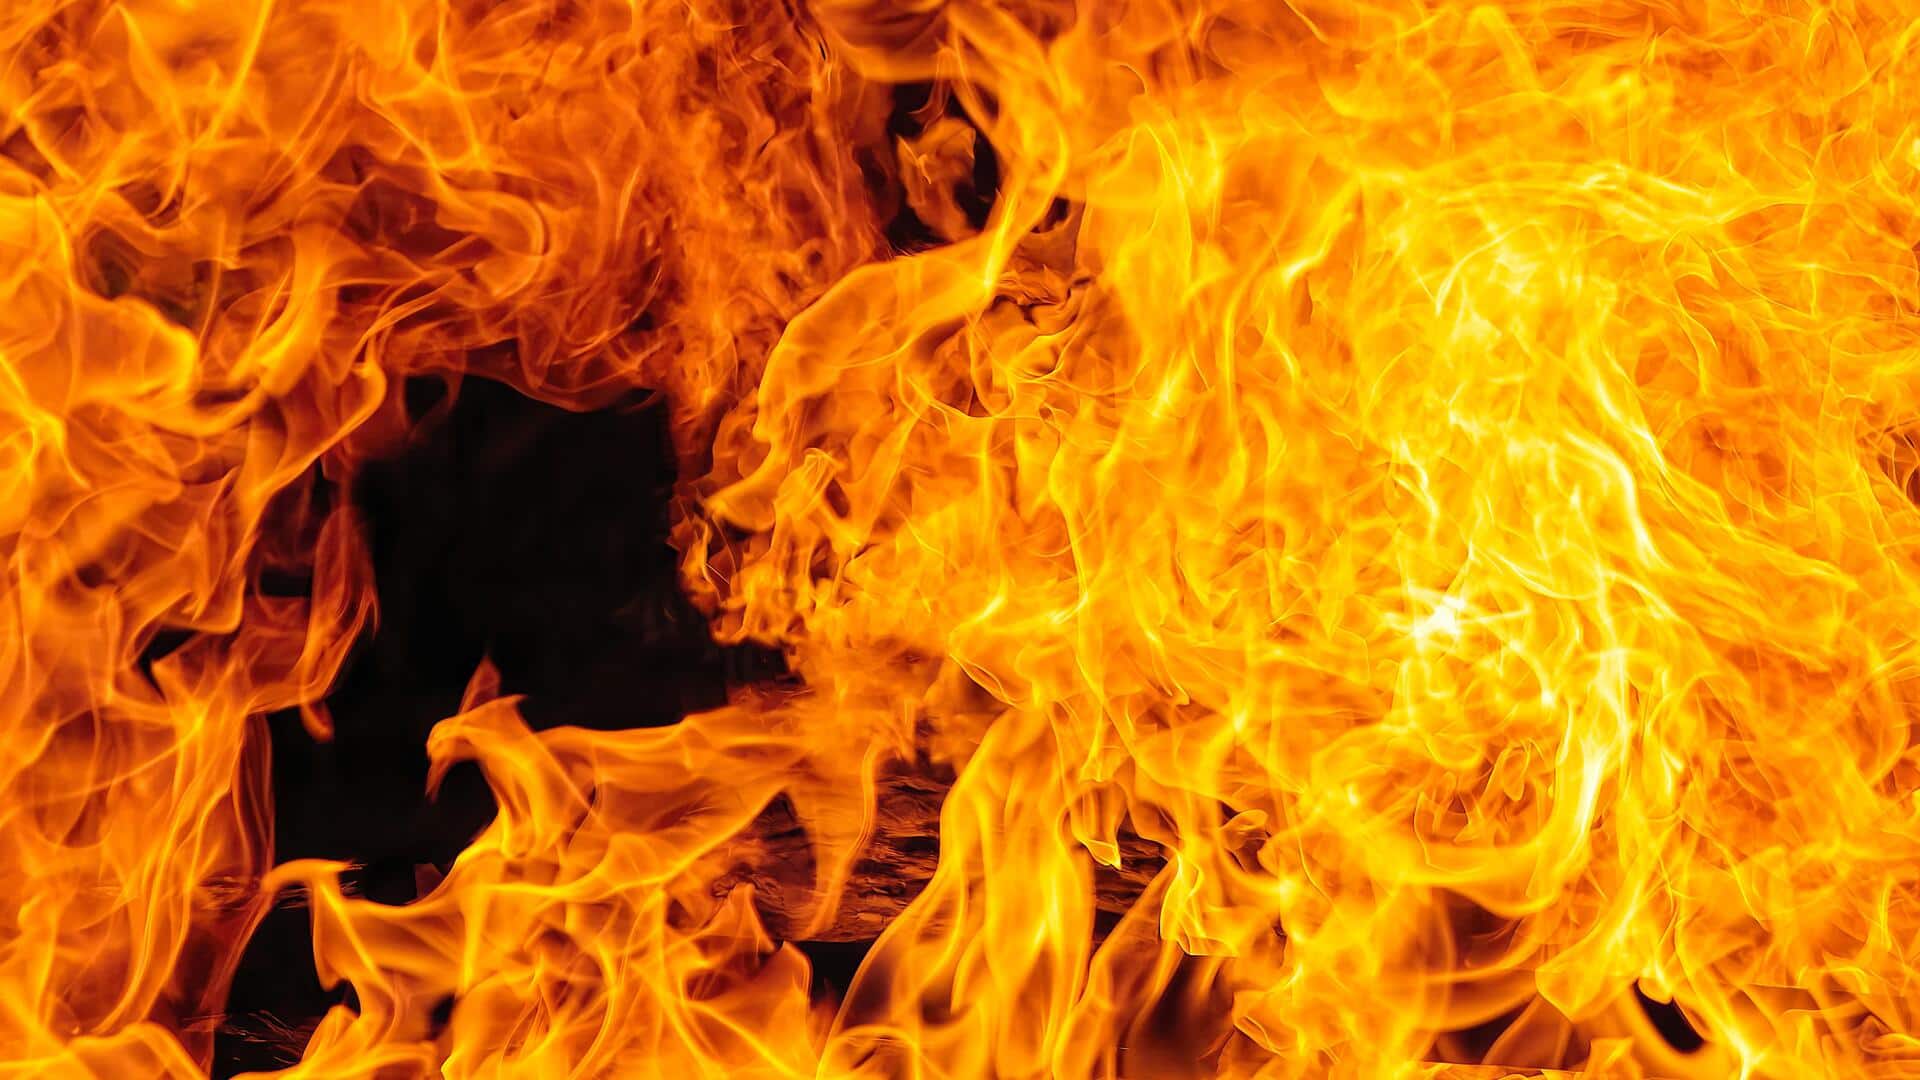 गुजरात: अरावली में पटाखा फैक्ट्री में विस्फोट के बाद लगी आग, 4 मजदूरों की मौत